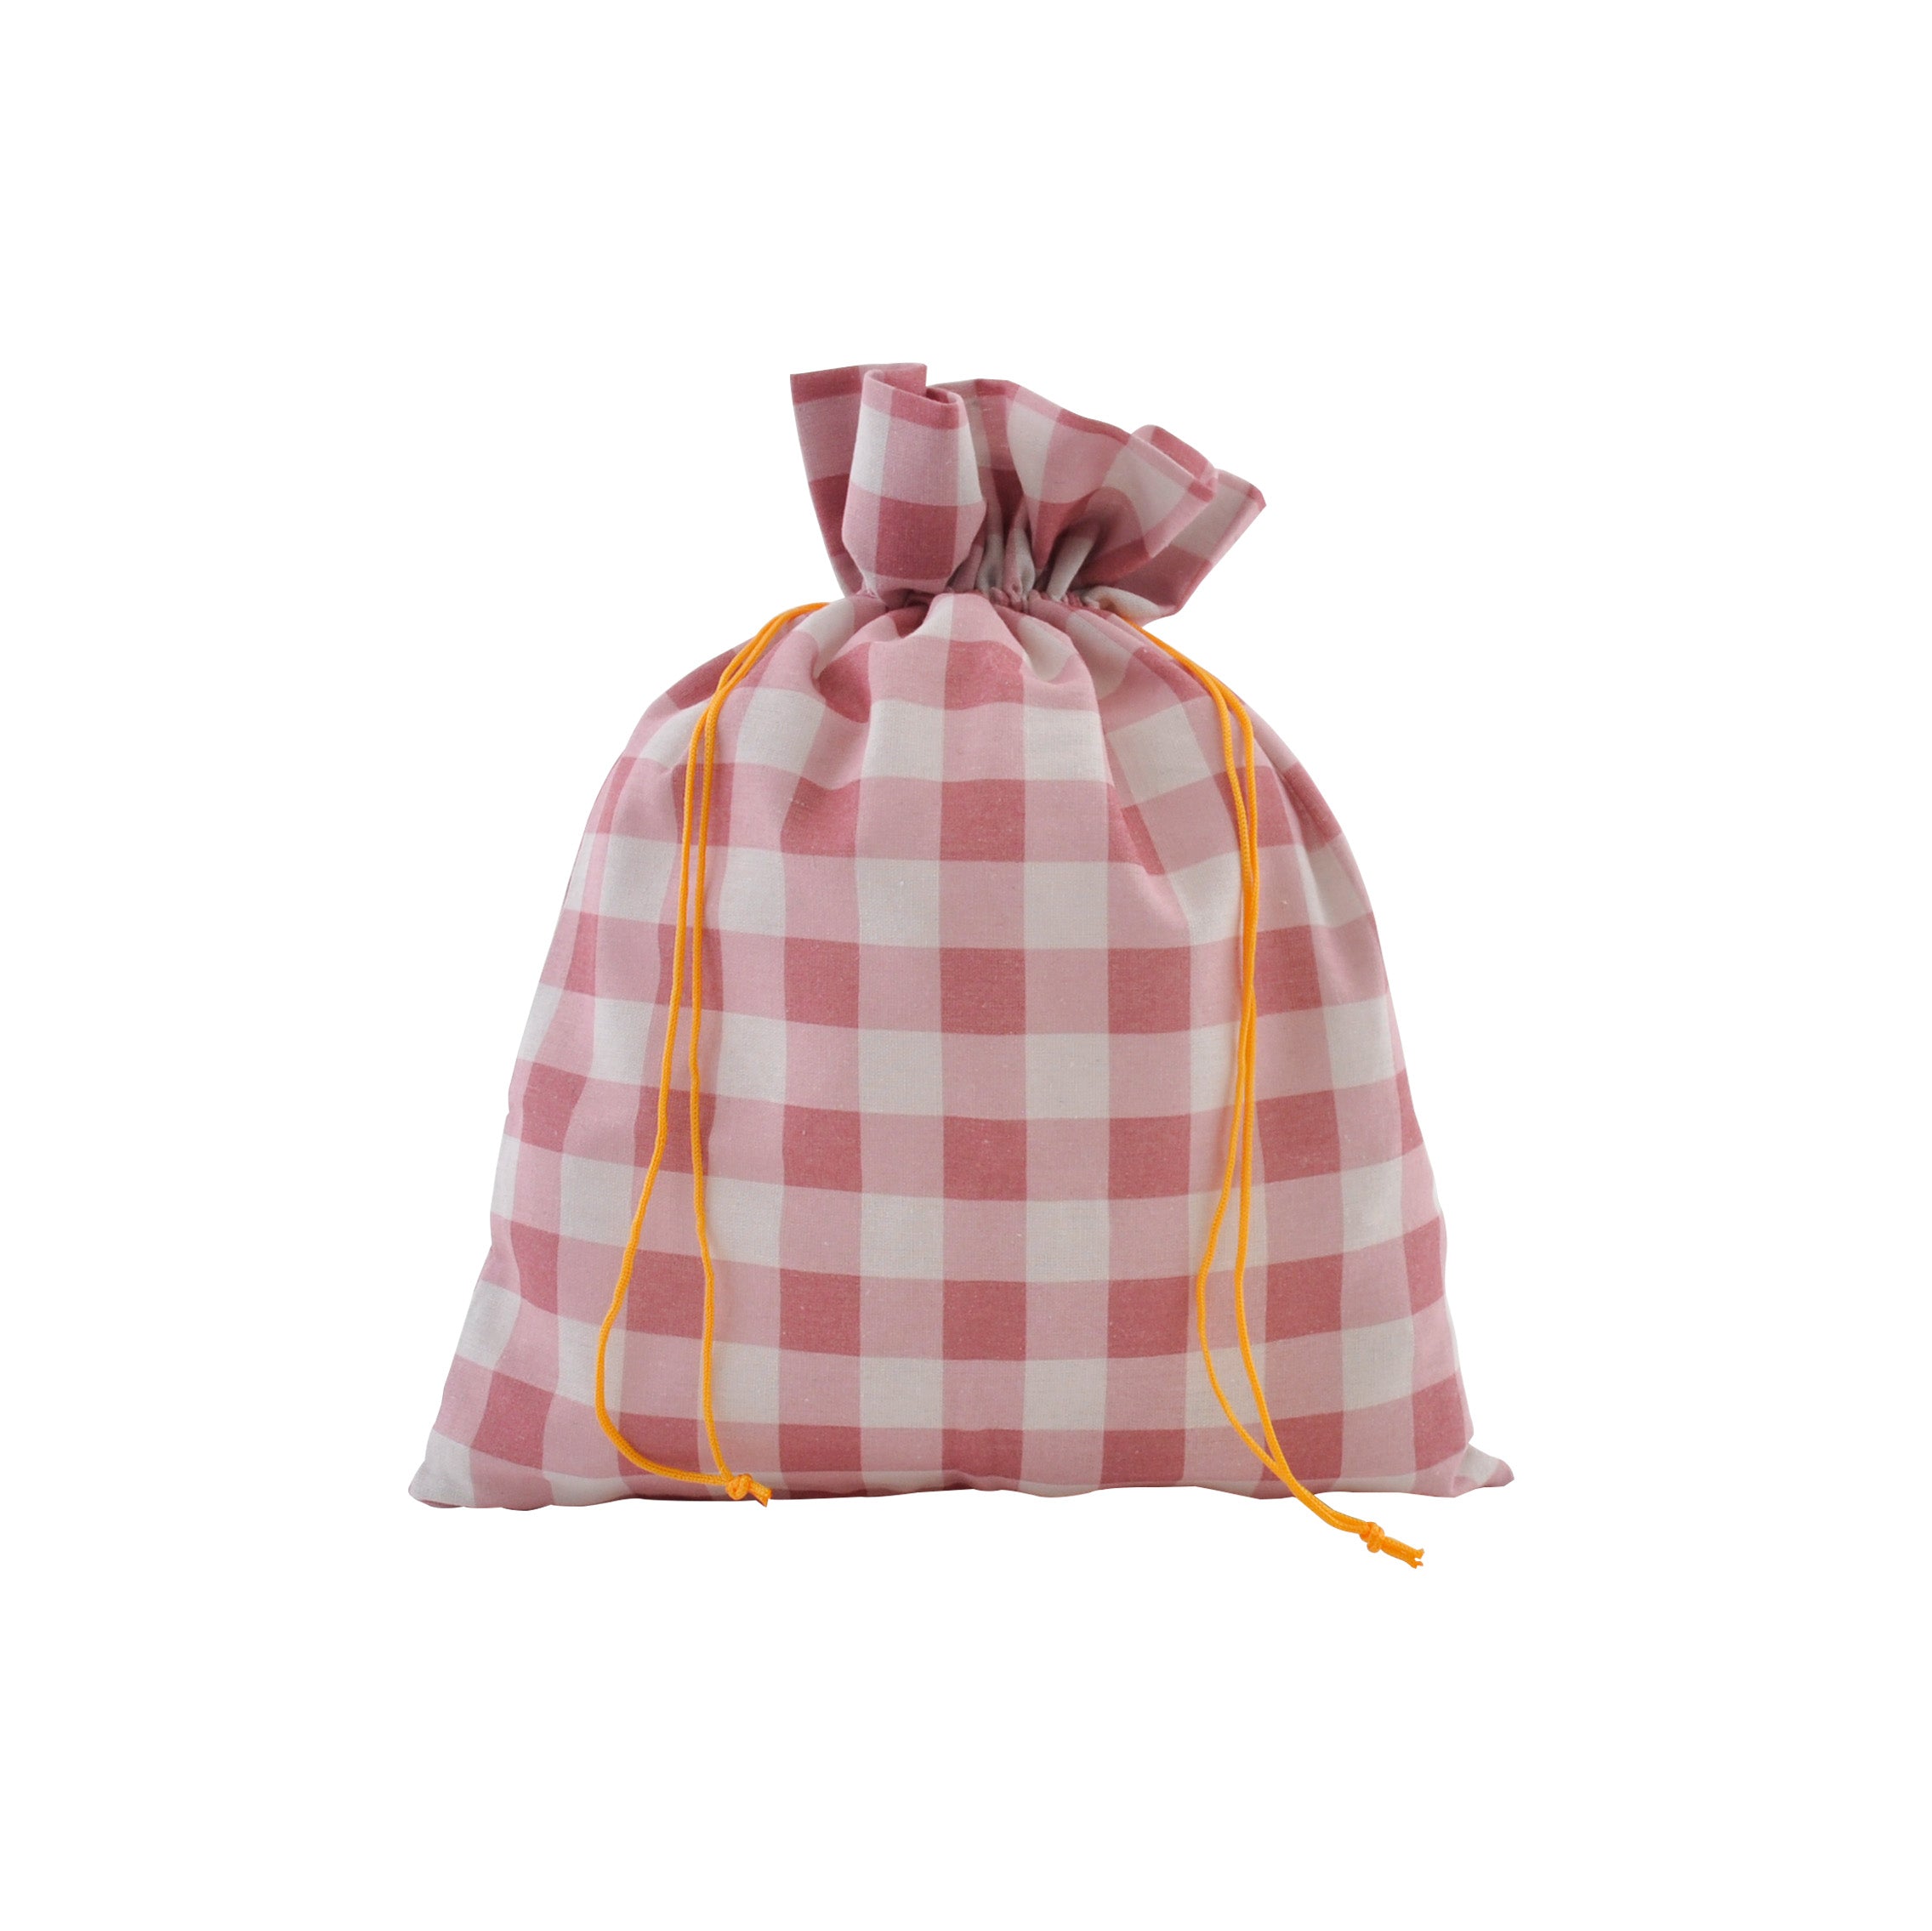 Christmas 23 Med Fabric Gift Bag - Cherry Gingham